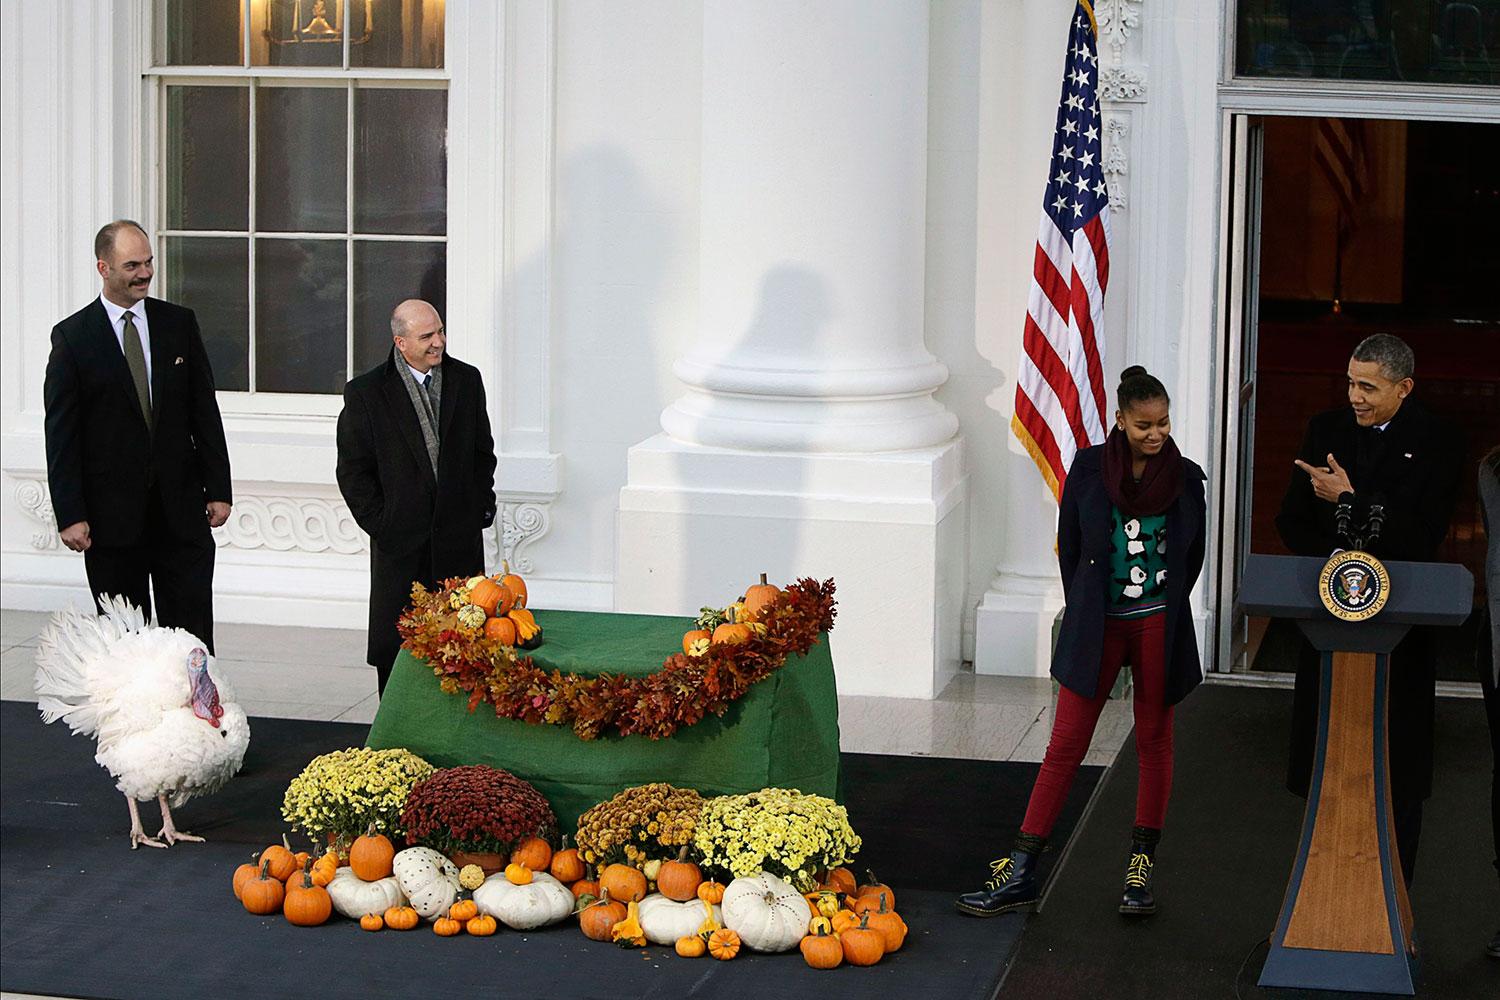 Como marca la tradición, Obama indultó a un pavo que vivirá en una finca histórica